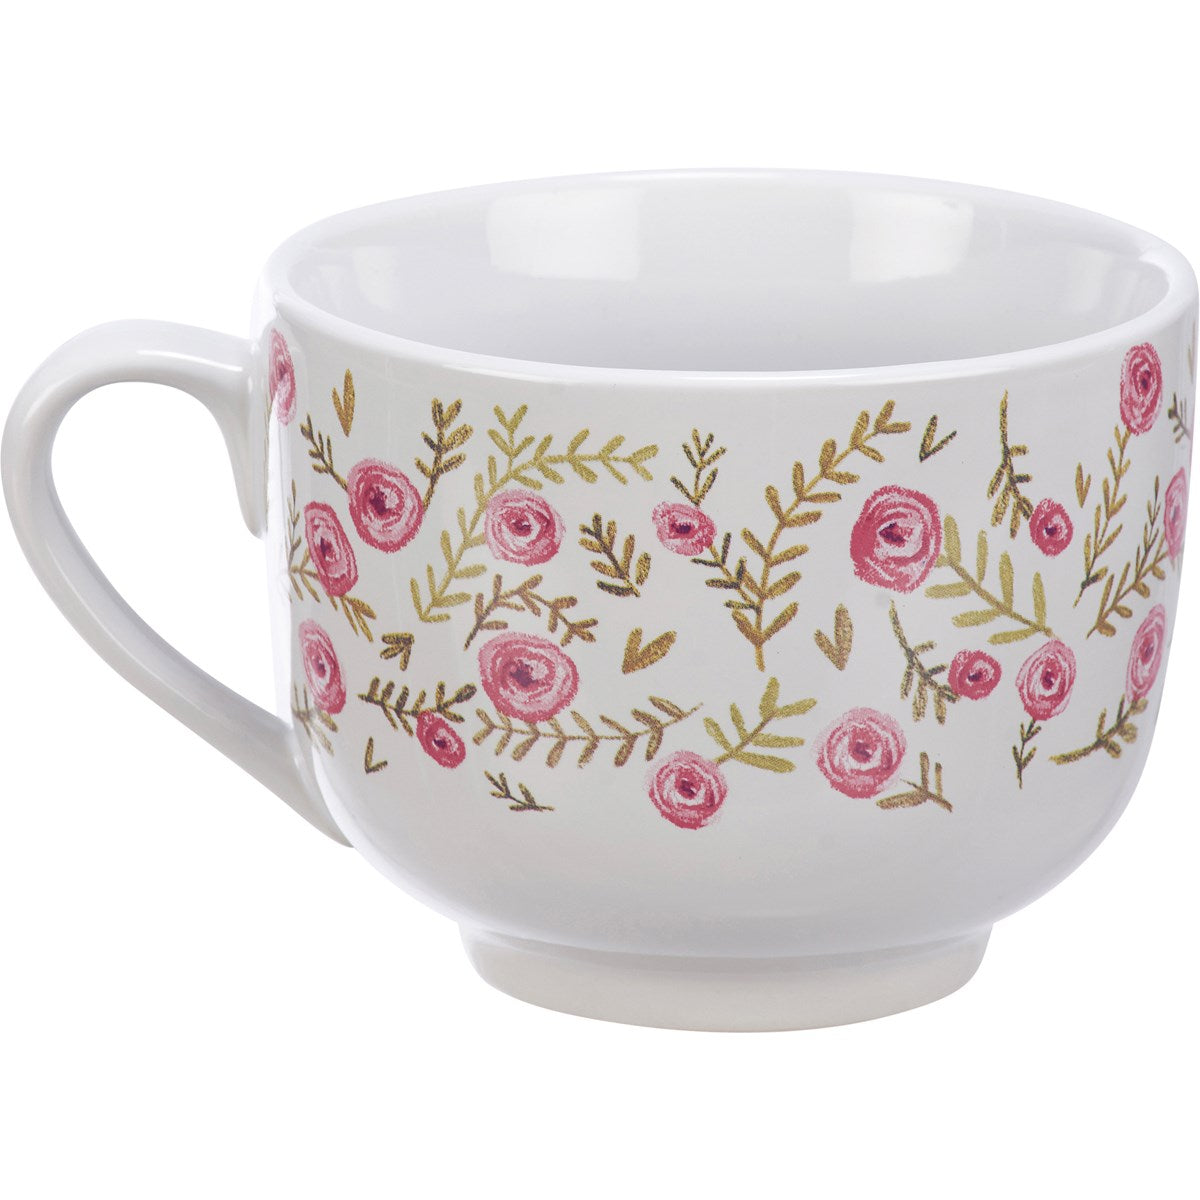 A Cup Of Hope Mug Floral 20 oz